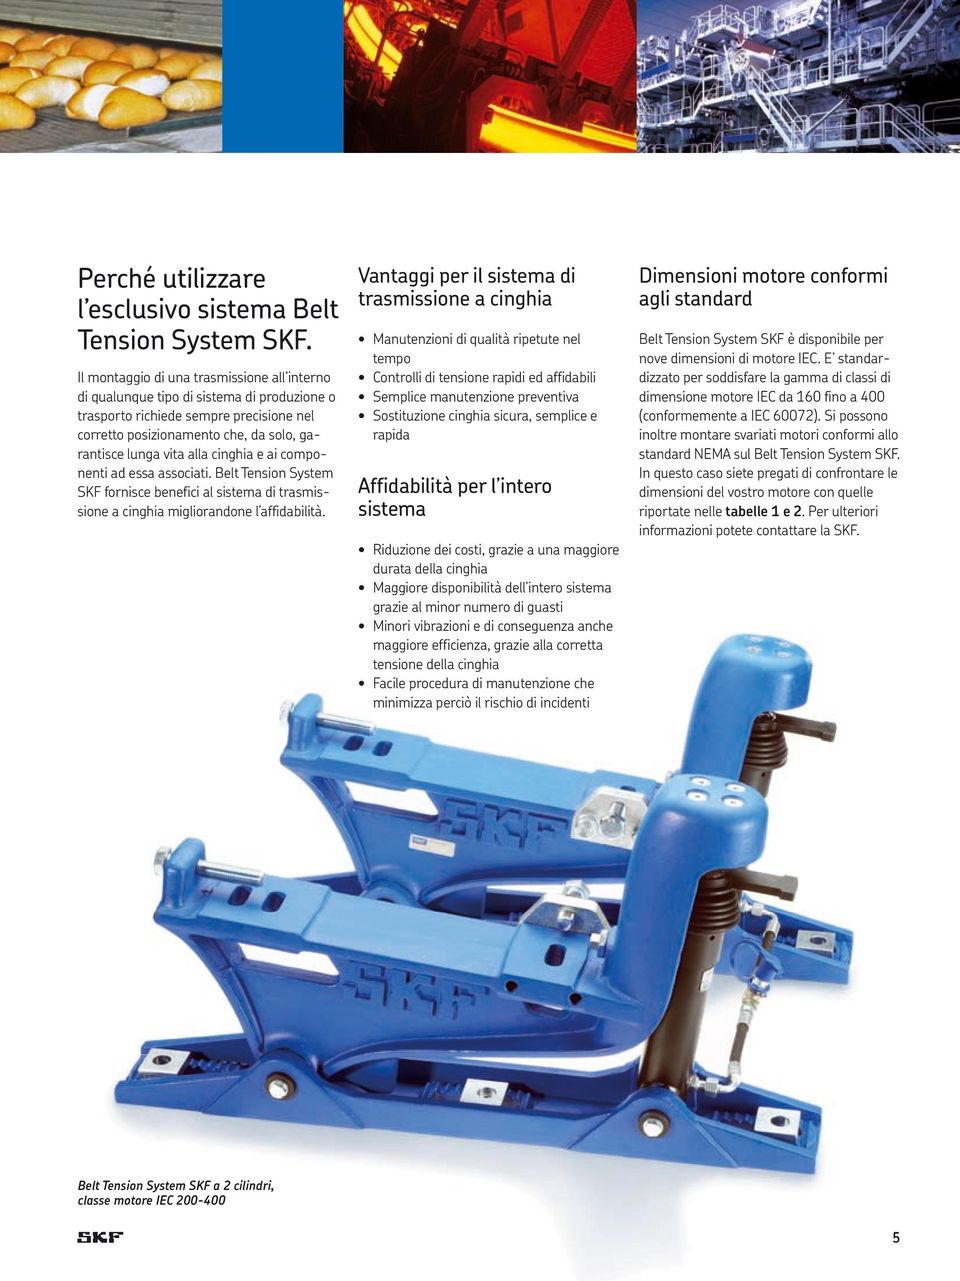 cinghia e ai componenti ad essa associati. Belt Tension System SKF fornisce benefici al sistema di trasmissione a cinghia migliorandone l affidabilità.